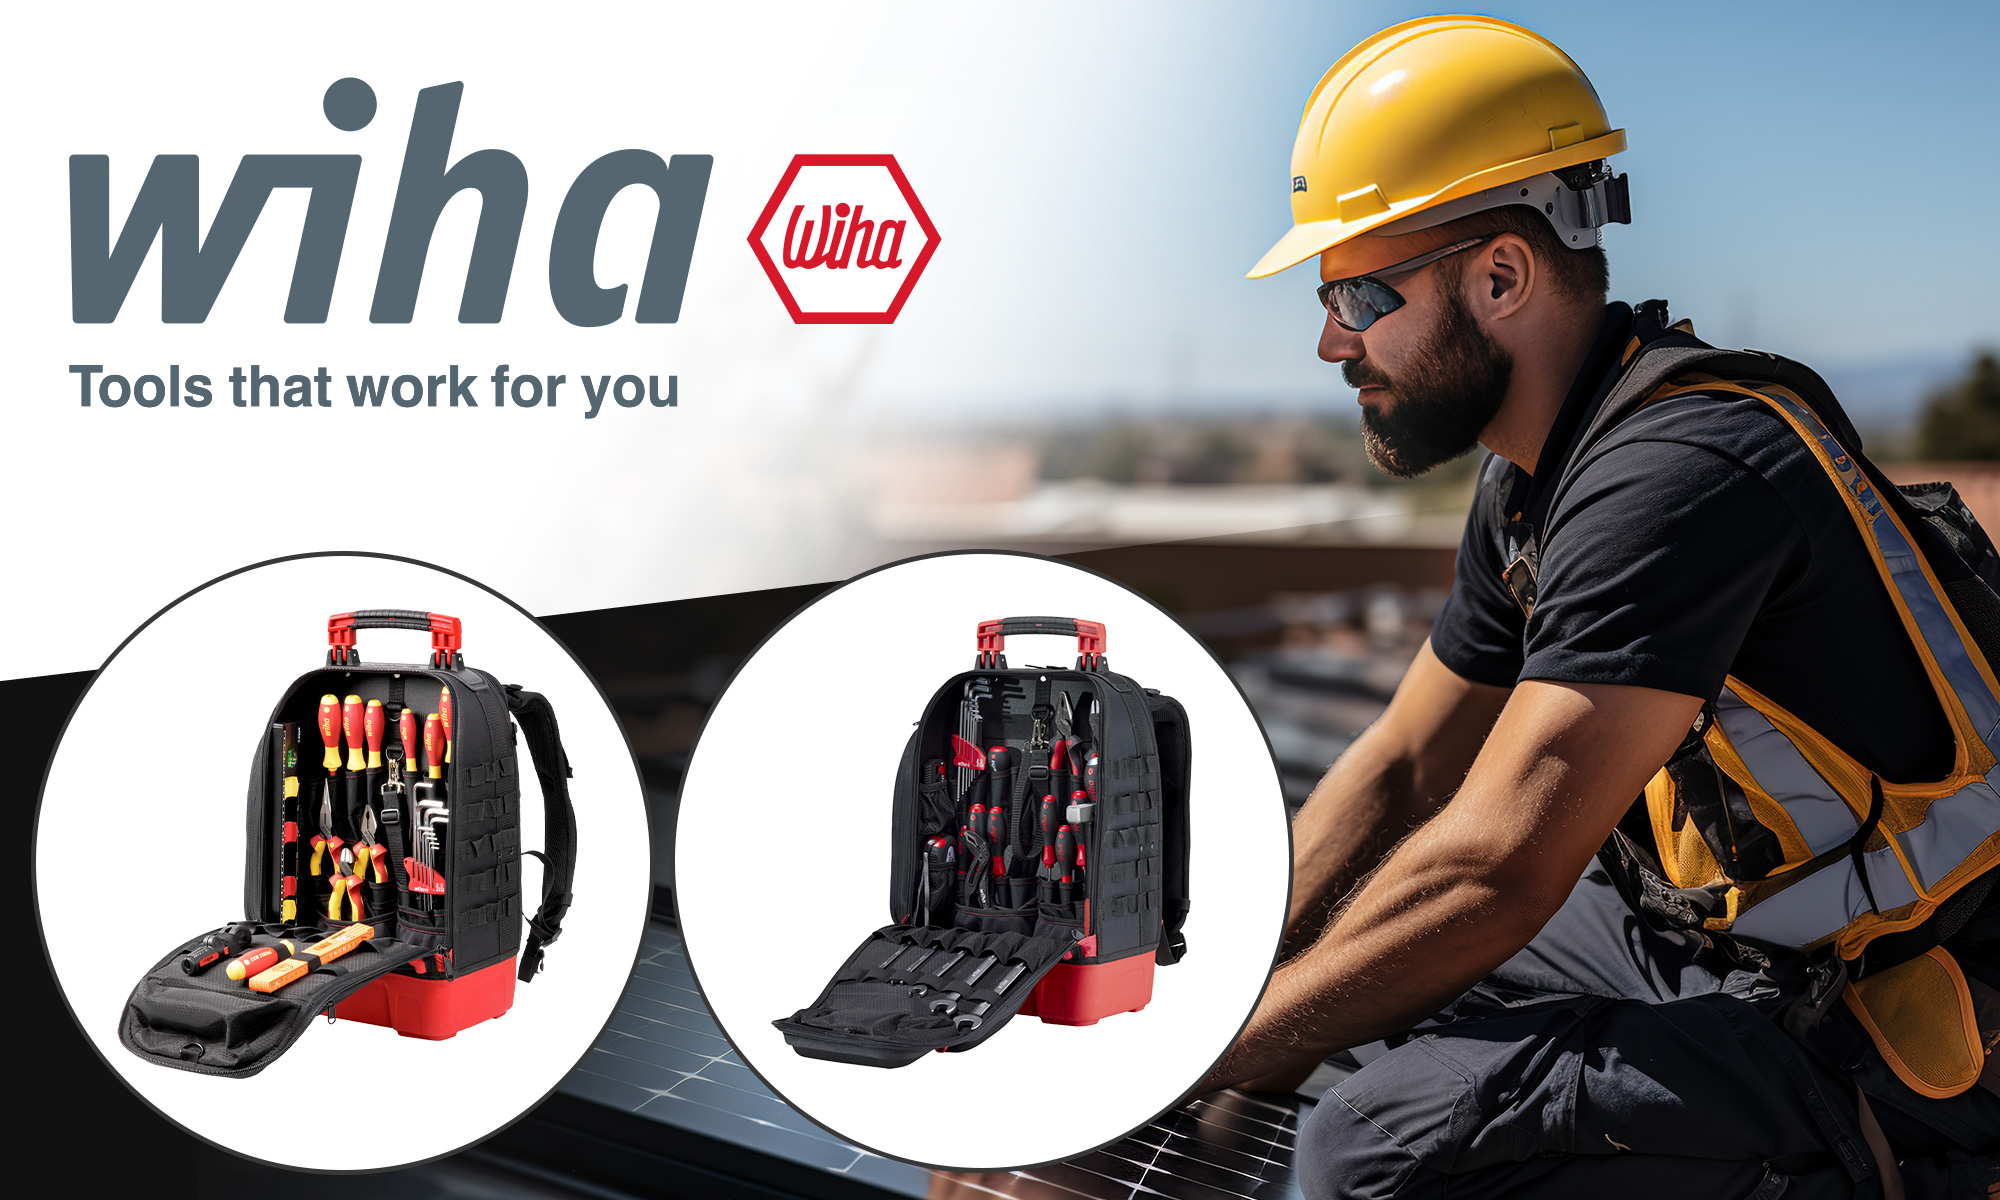 Wiha tool backpacks  Electronic components. Distributor, online